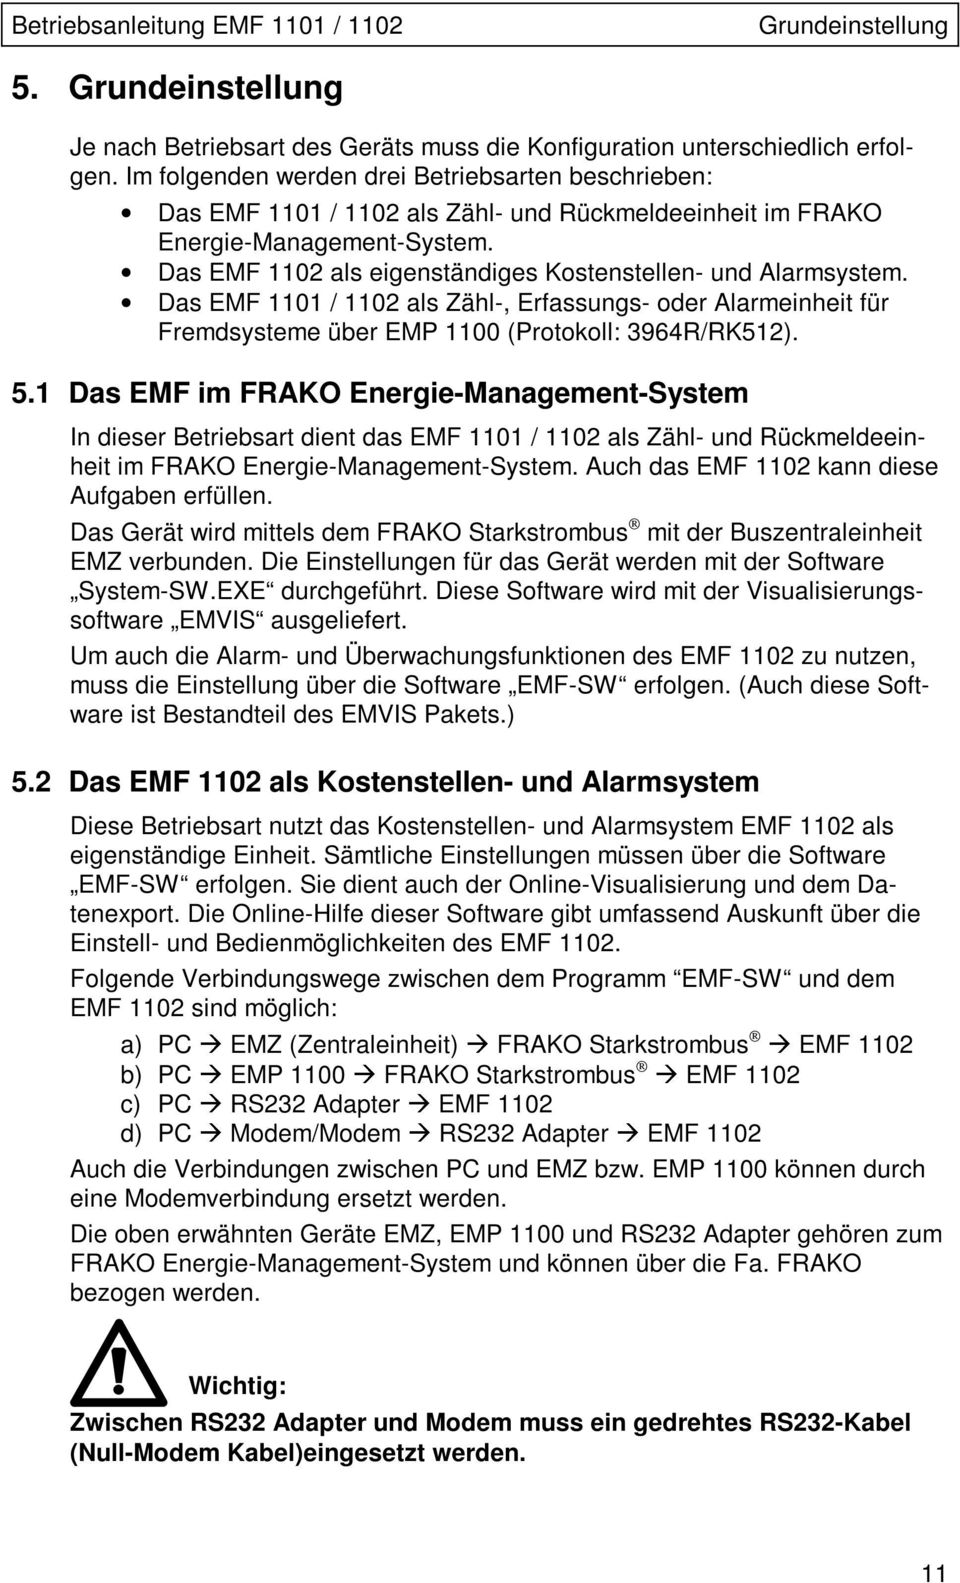 Das EMF 1102 als eigenständiges Kostenstellen- und Alarmsystem. Das EMF 1101 / 1102 als Zähl-, Erfassungs- oder Alarmeinheit für Fremdsysteme über EMP 1100 (Protokoll: 3964R/RK512). 5.